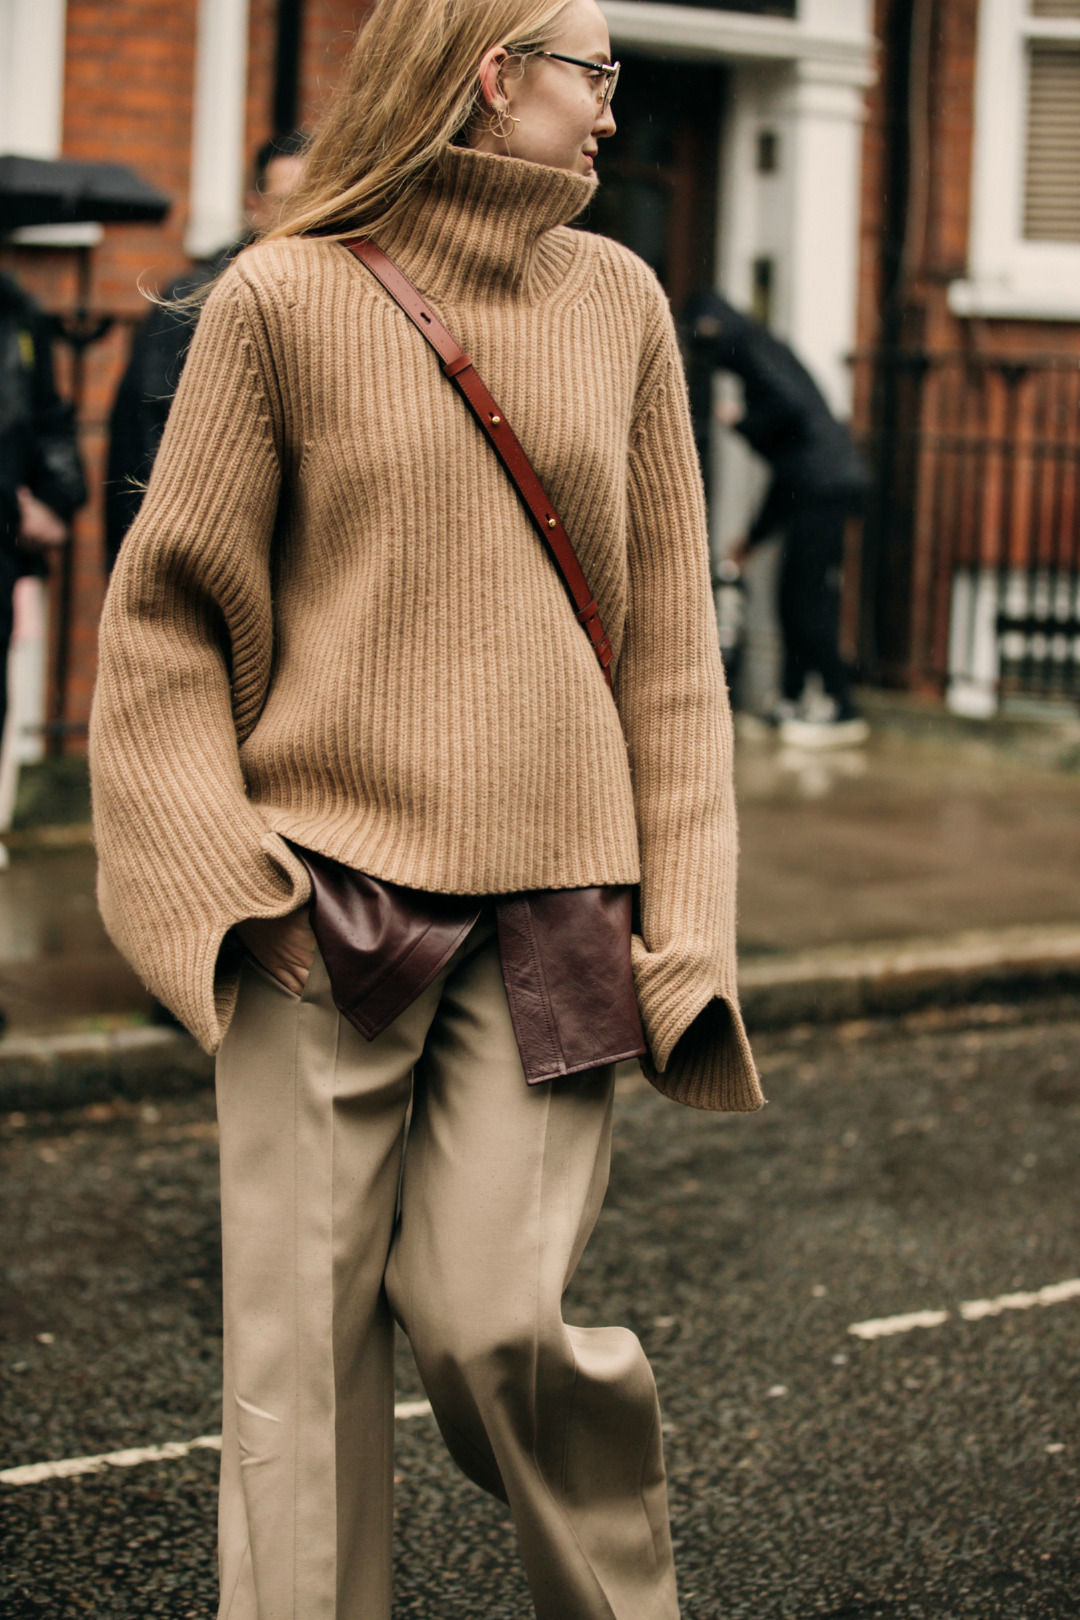 Sokak Stili: 2019-20 Sonbahar/Kış Londra Moda Haftası 4. Gün